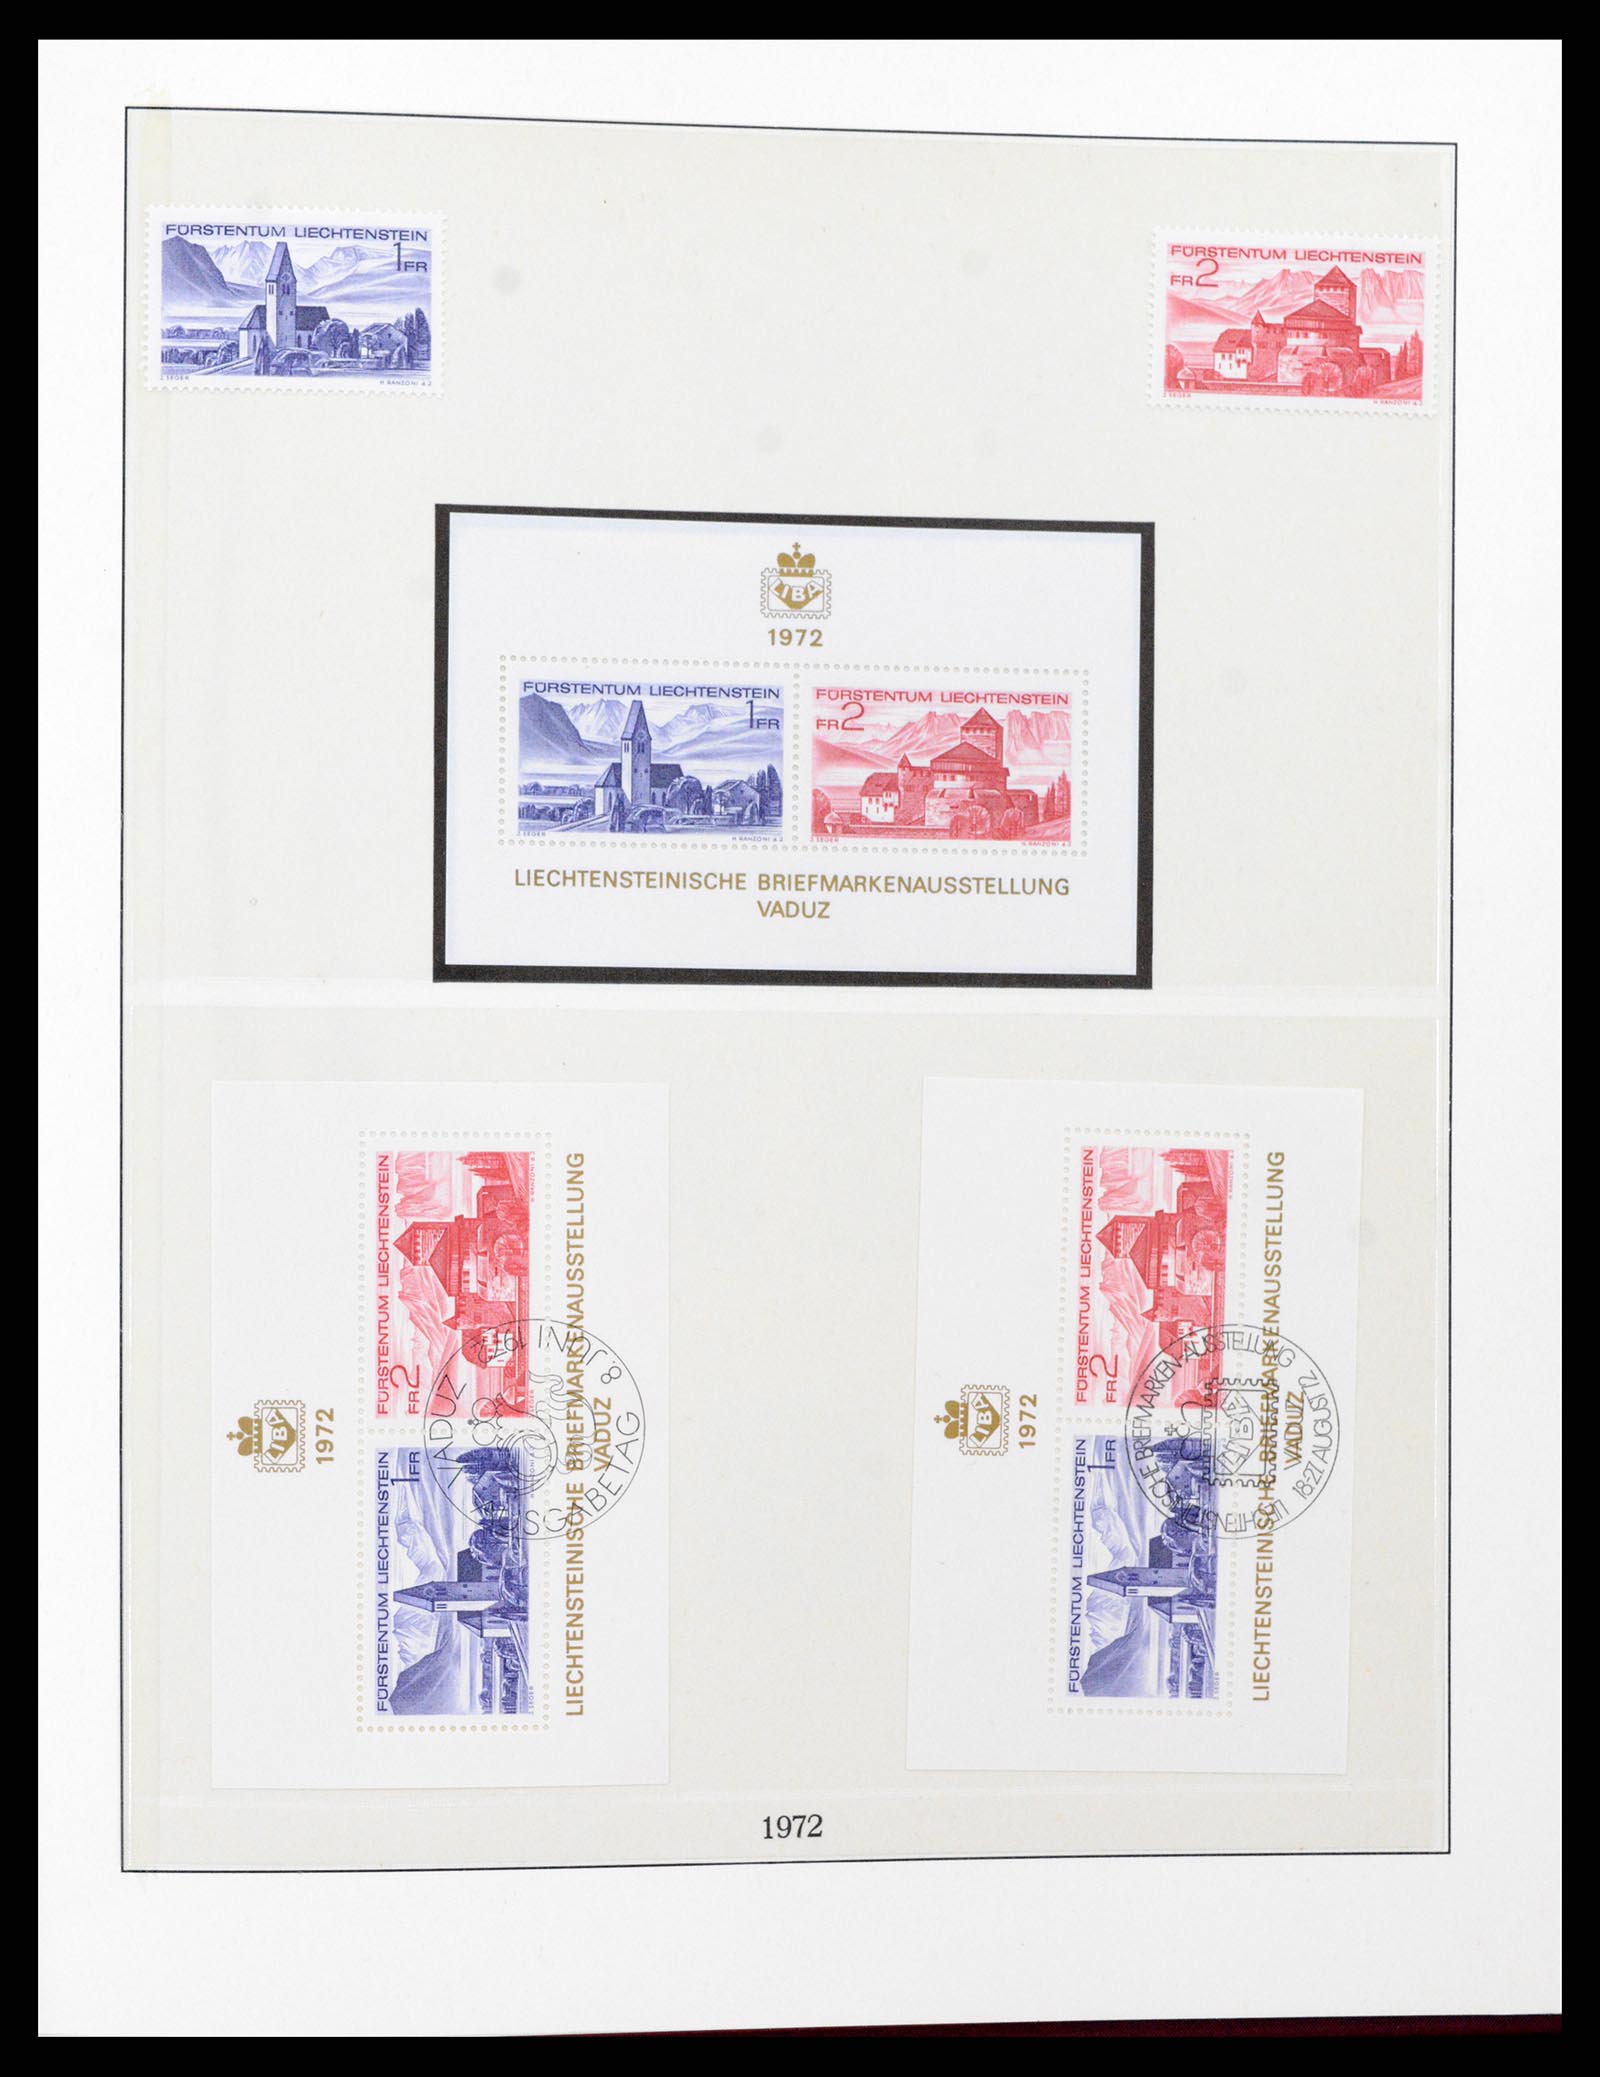 37293 052 - Stamp collection 37293 Liechtenstein 1912-2003.